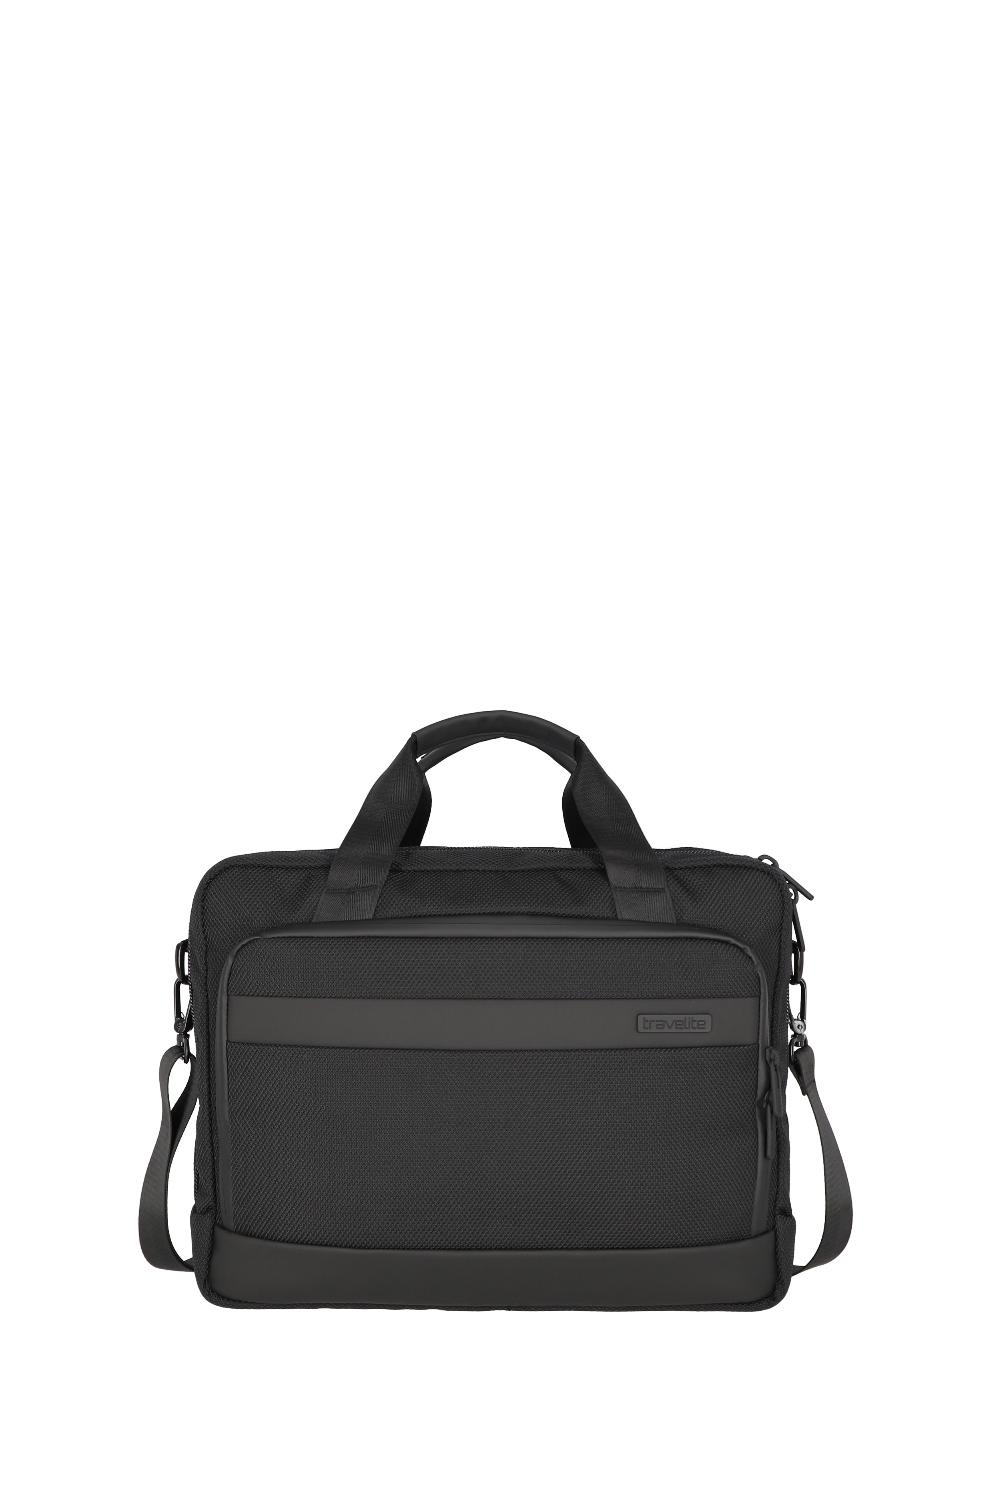 Travelite Meet Laptop Bag 15,6 Black